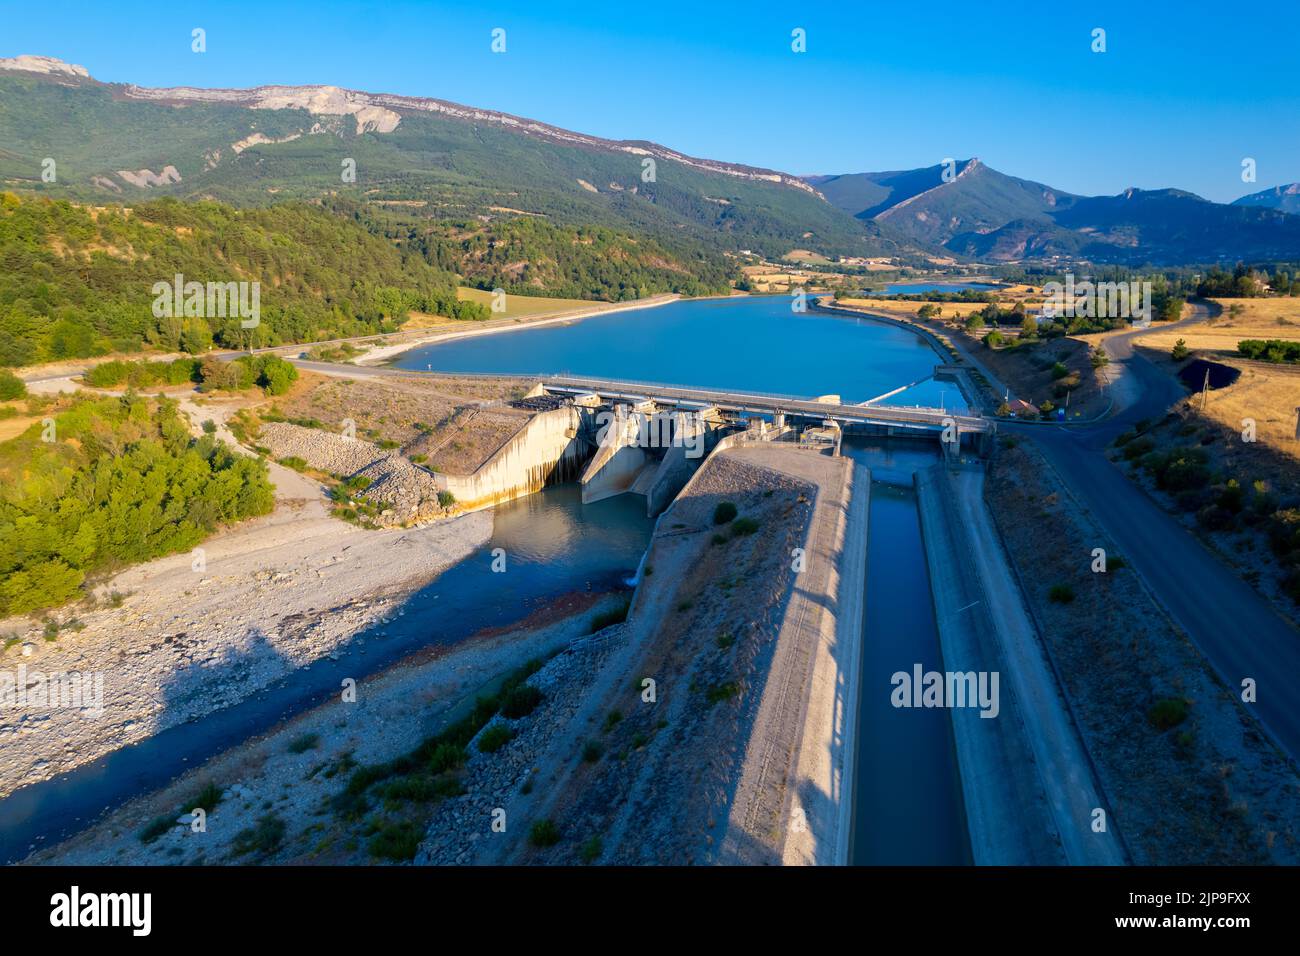 Vue aérienne du barrage hydraulique de Saint-Sauveur et de son réservoir d'eau, situé sur le fleuve Buëch, dans le département des Hautes-Alpes, France Banque D'Images